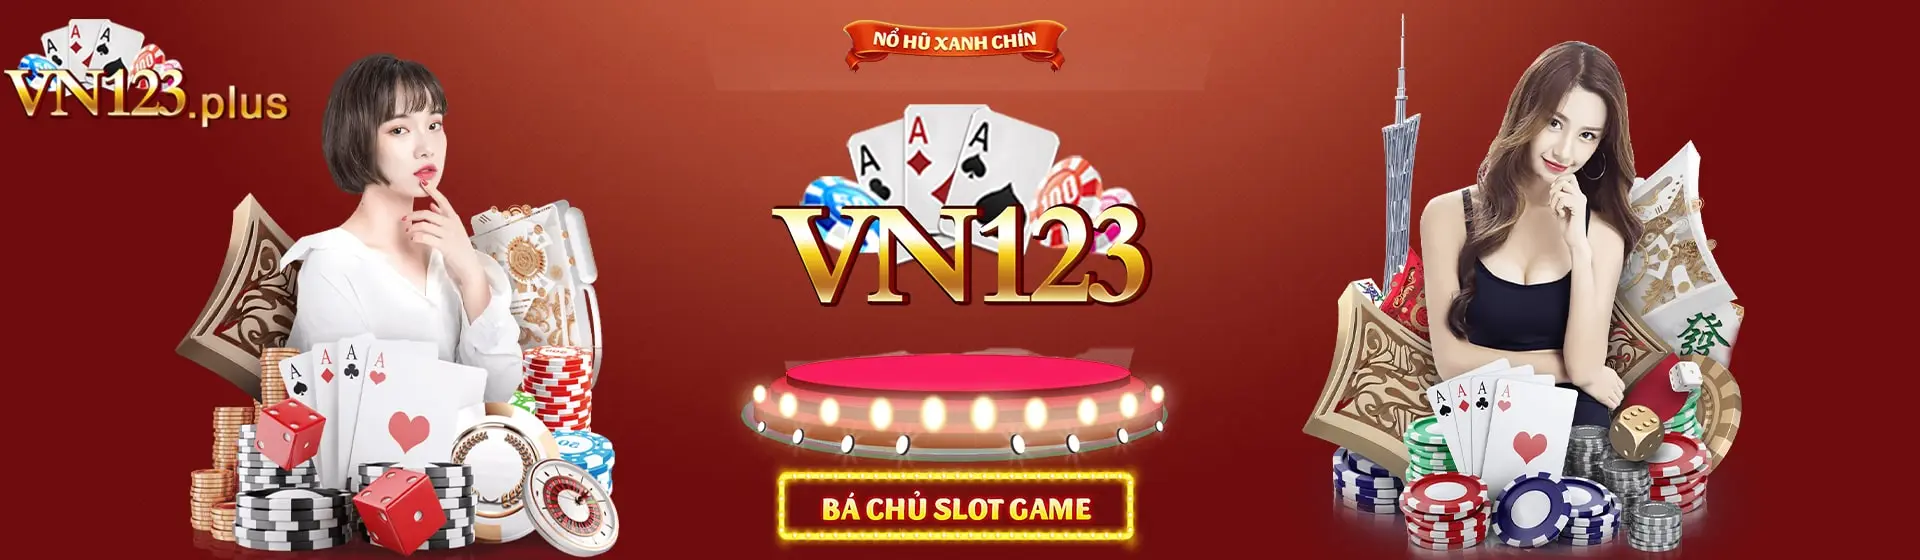 Banner Vn123 win